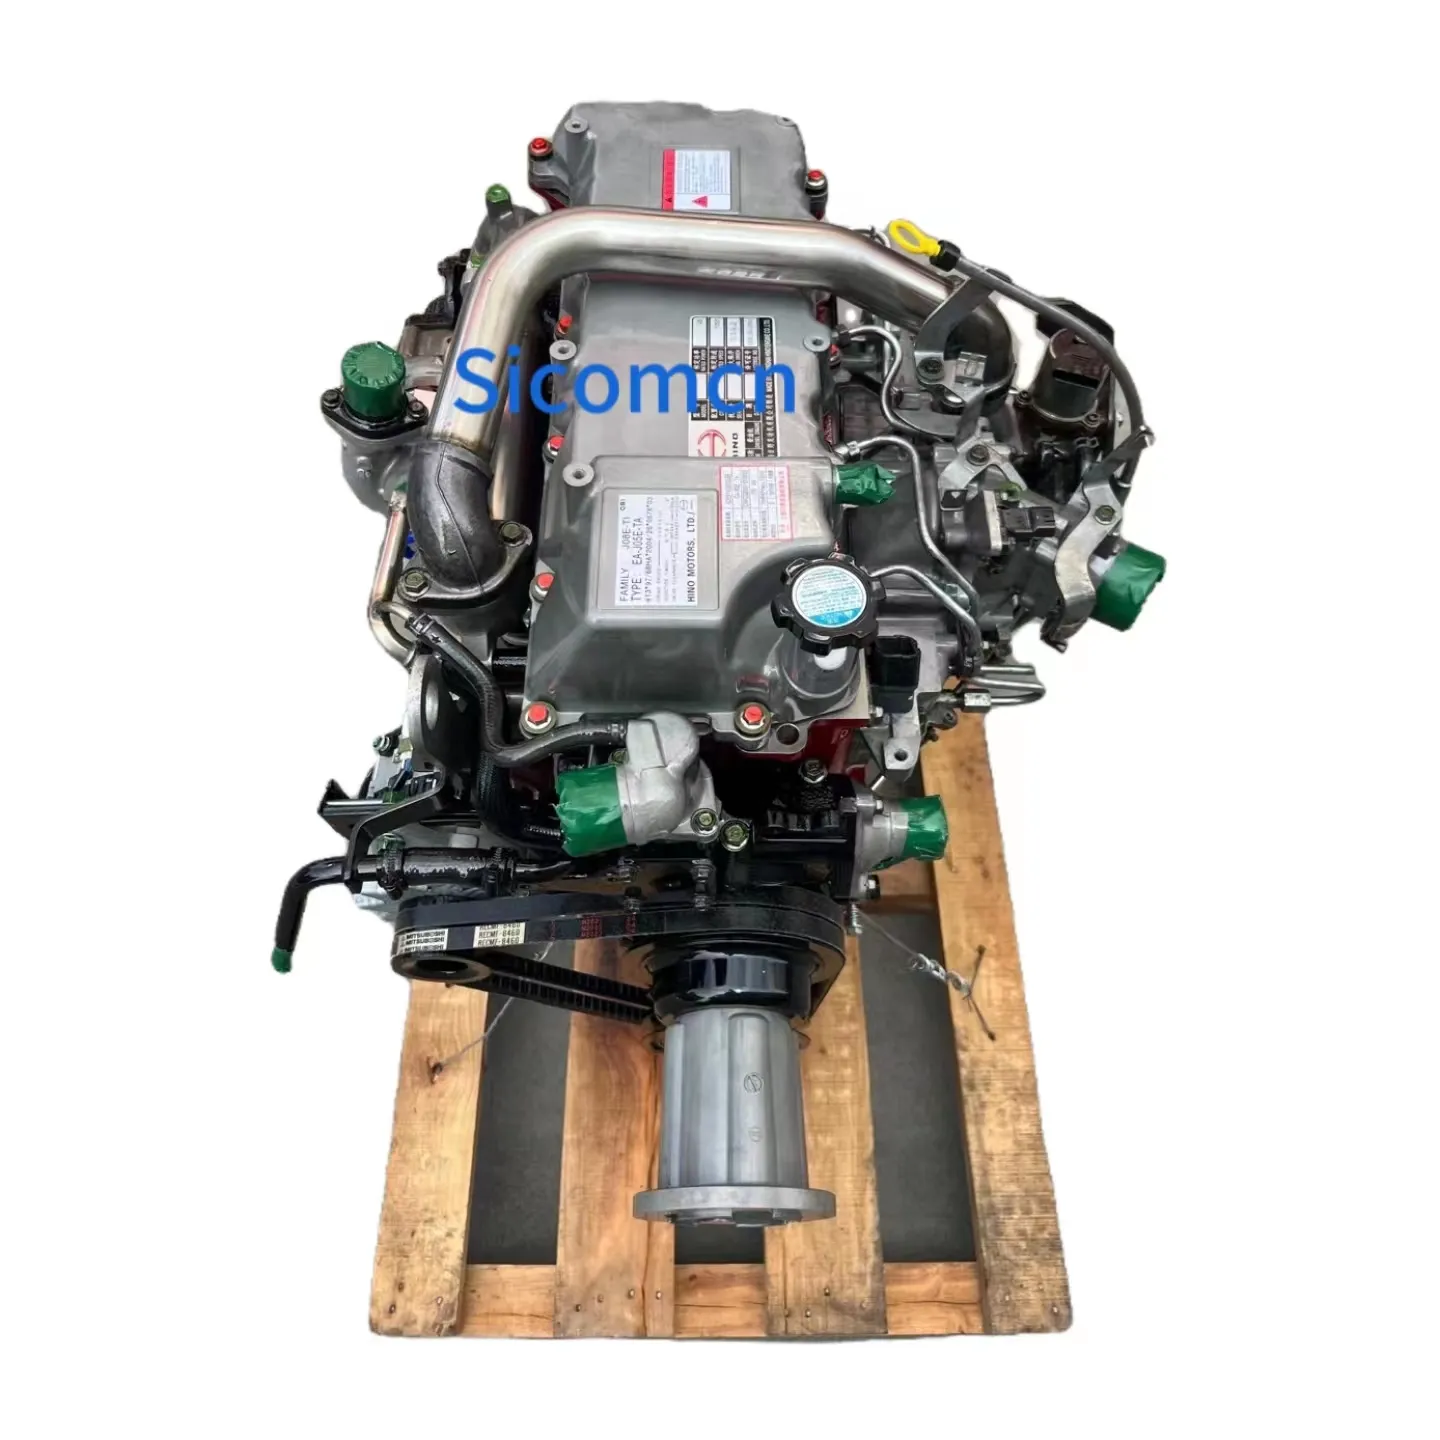 نموذج تجميع المحرك من sicome الأكثر مبيعًا للحفارات Hino من طراز تجميع المحرك J05 J05E